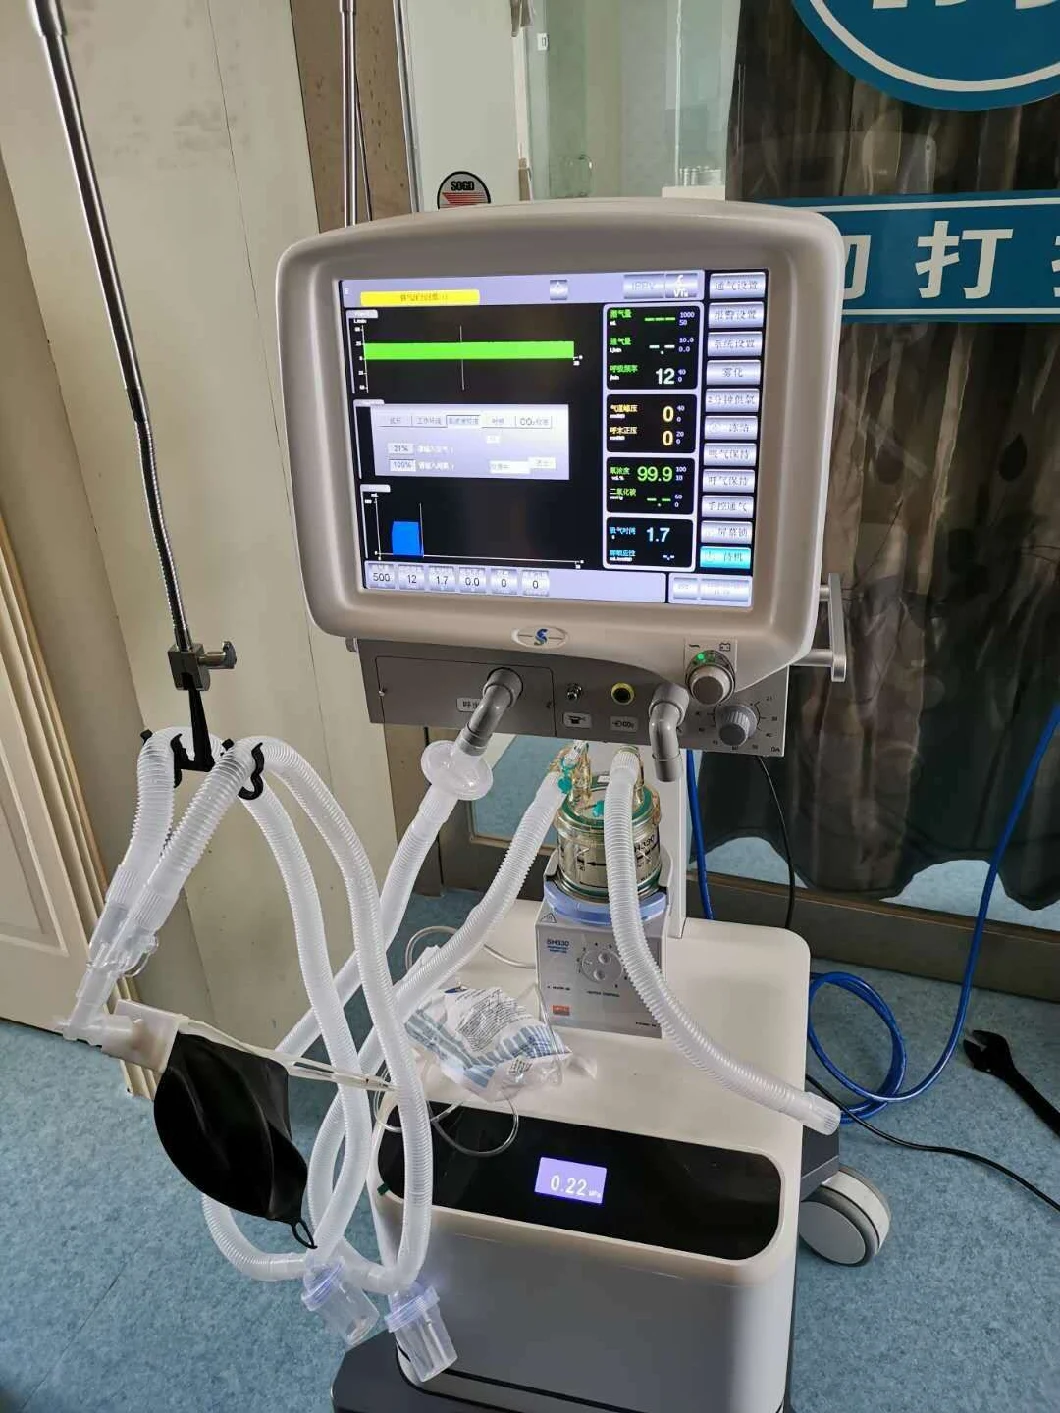 Superstar Medical S1100 ICU Electrical Ventilator with Air Compressor Ventilators Machine for ICU Hospital